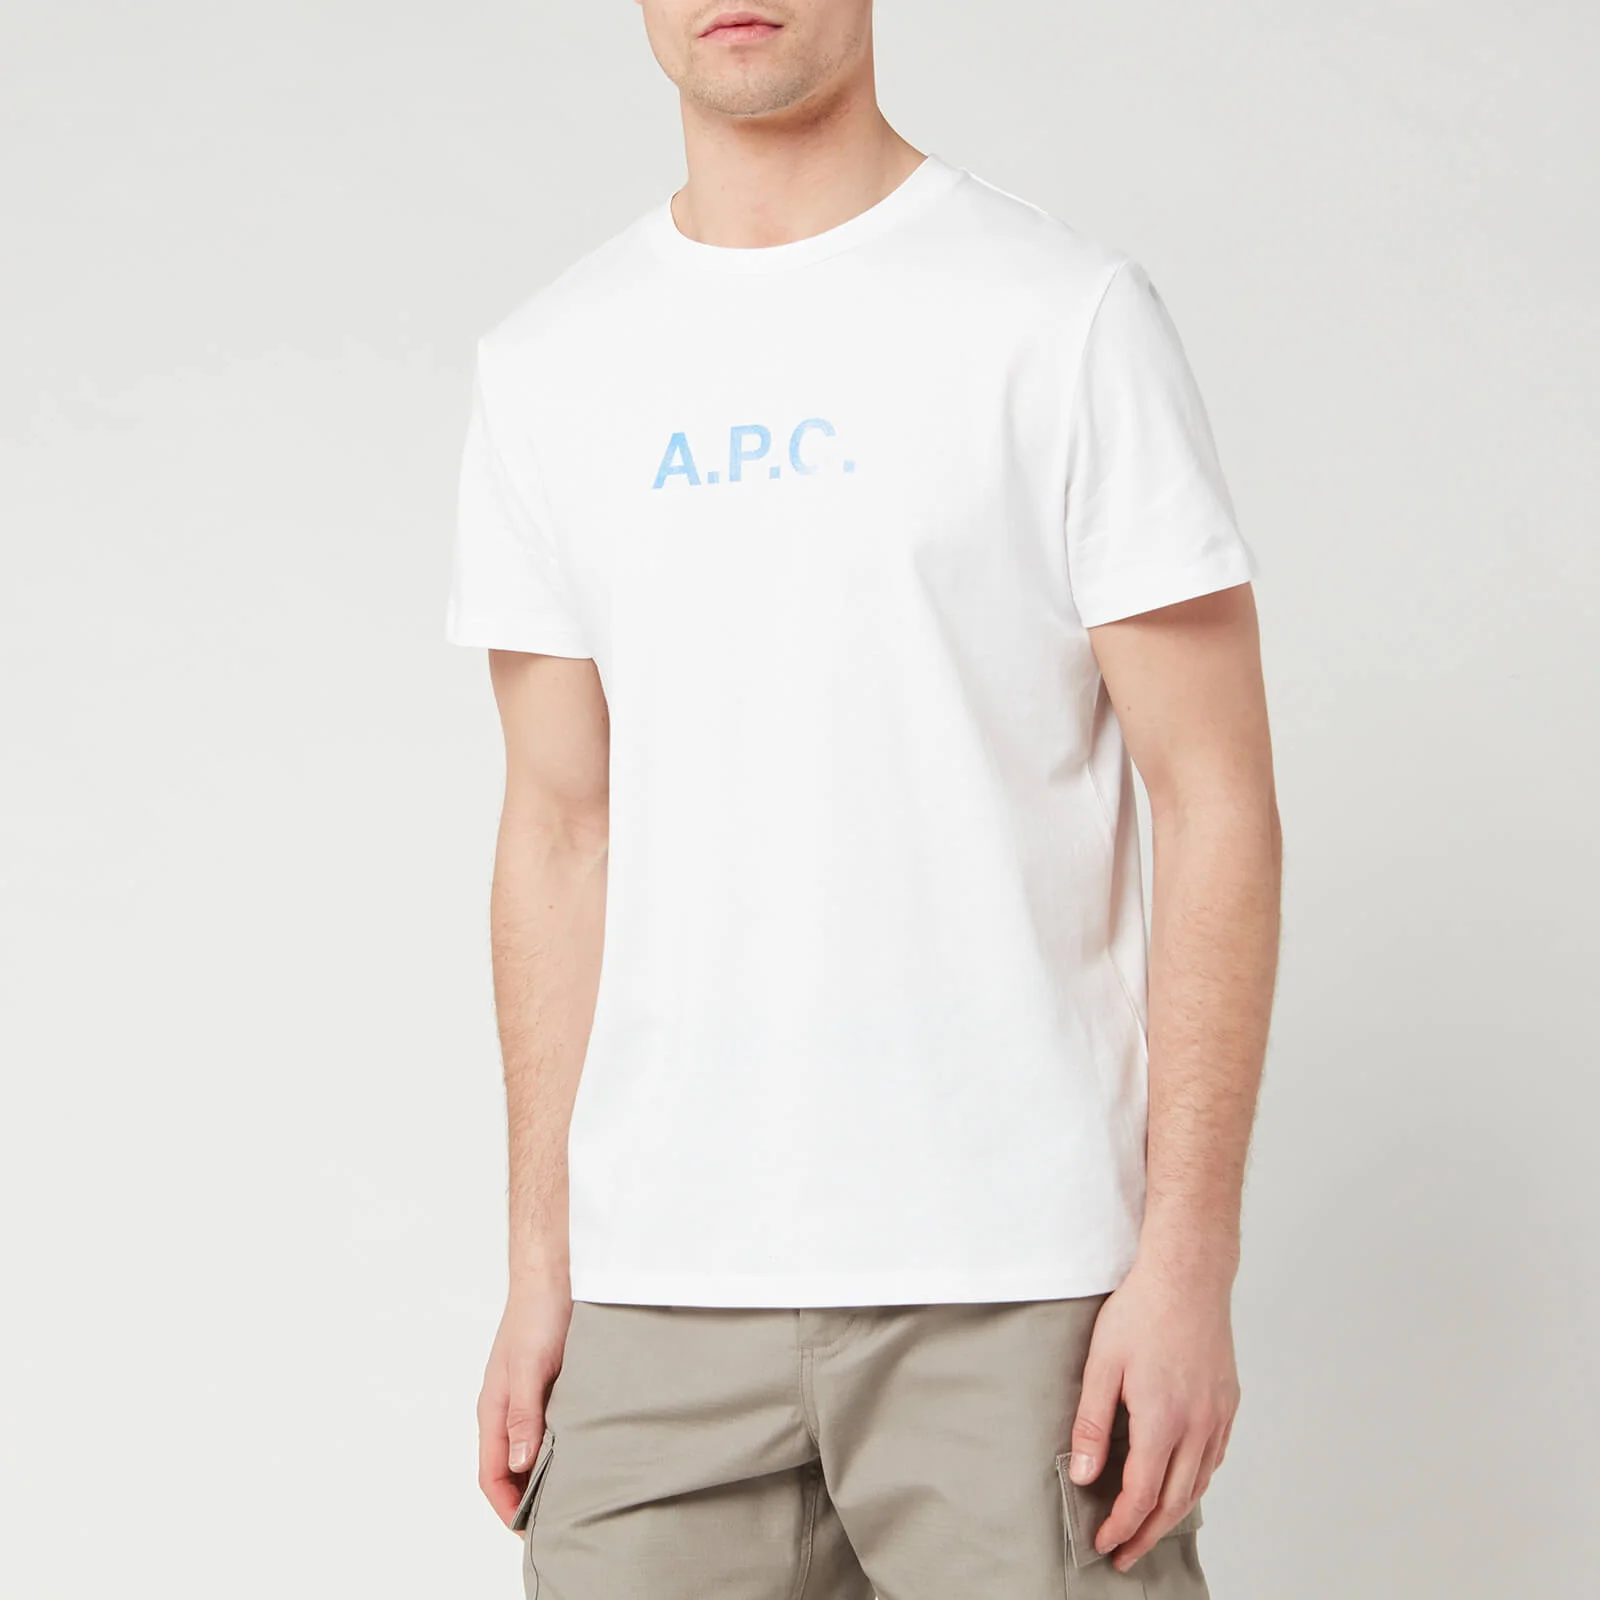 A.P.C. Men's Stamp T-Shirt - Blanc Image 1